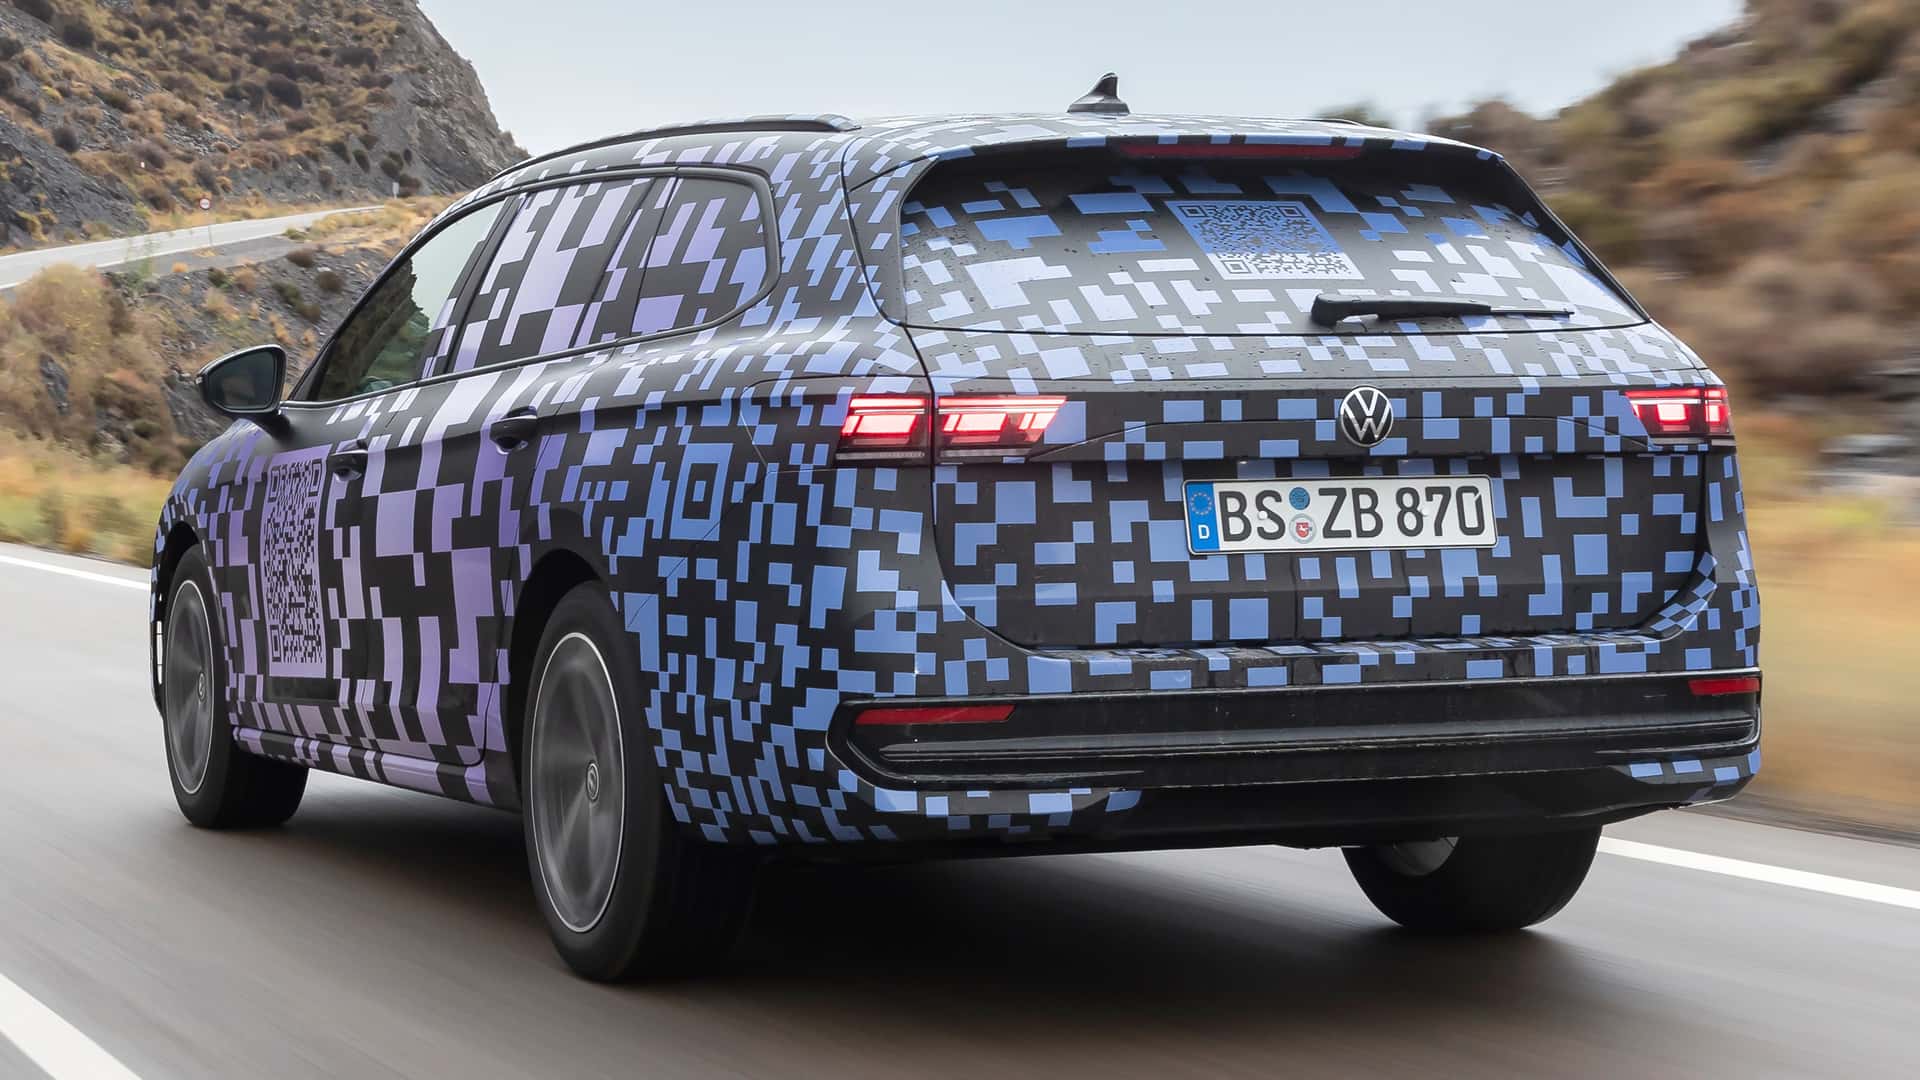 Yeni Volkswagen Passat ile ilgili ilk resmi bilgiler paylaşıldı